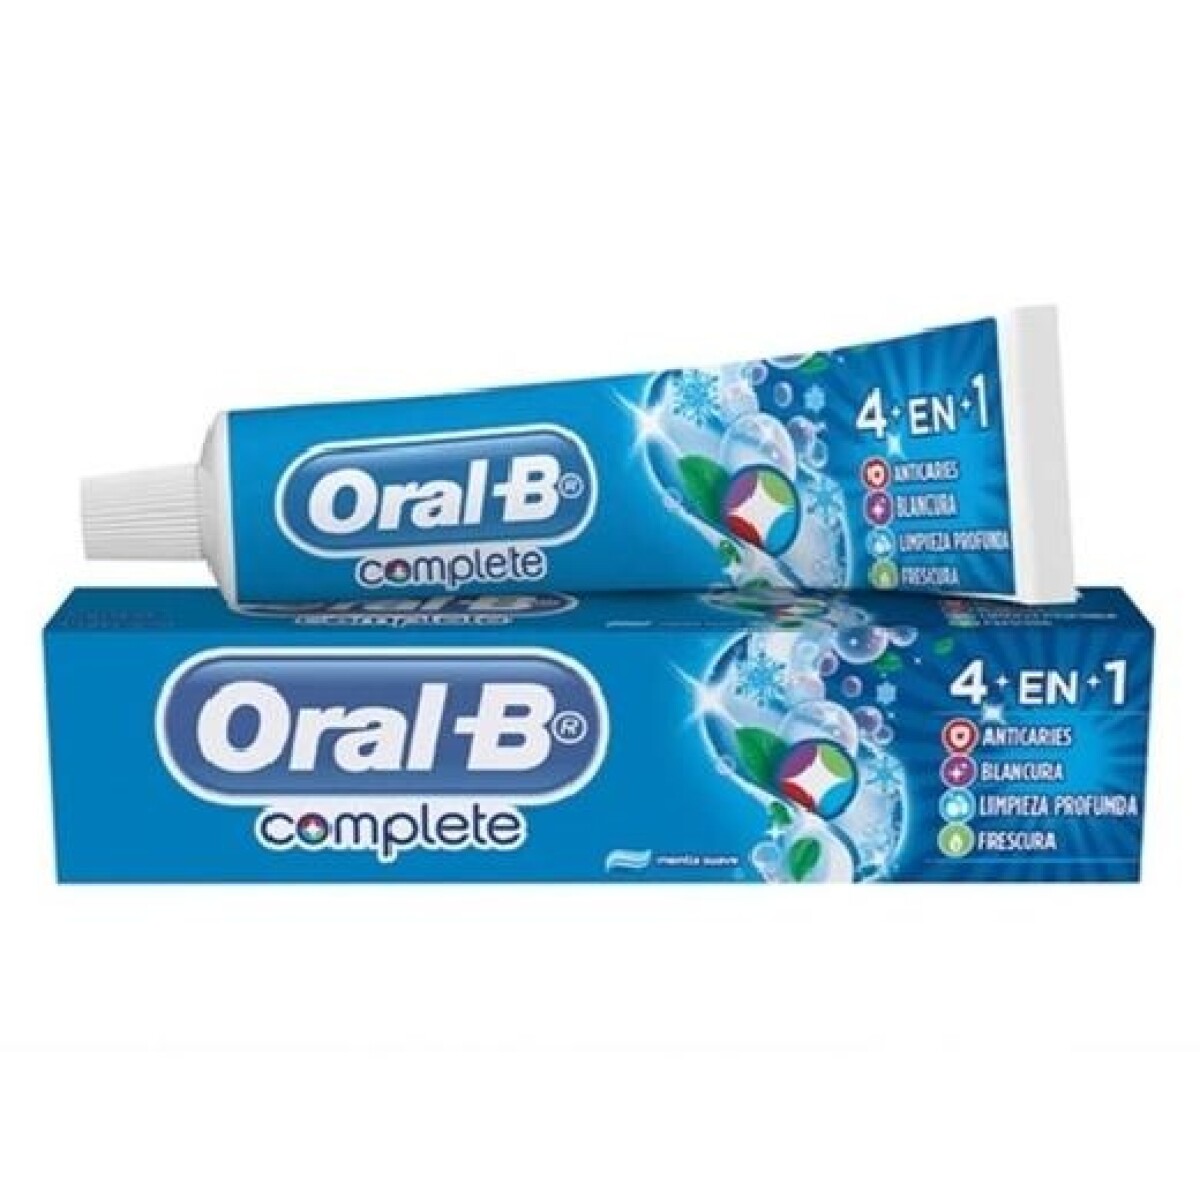 Oral-B Complete 60 Grs. 4 En 1 